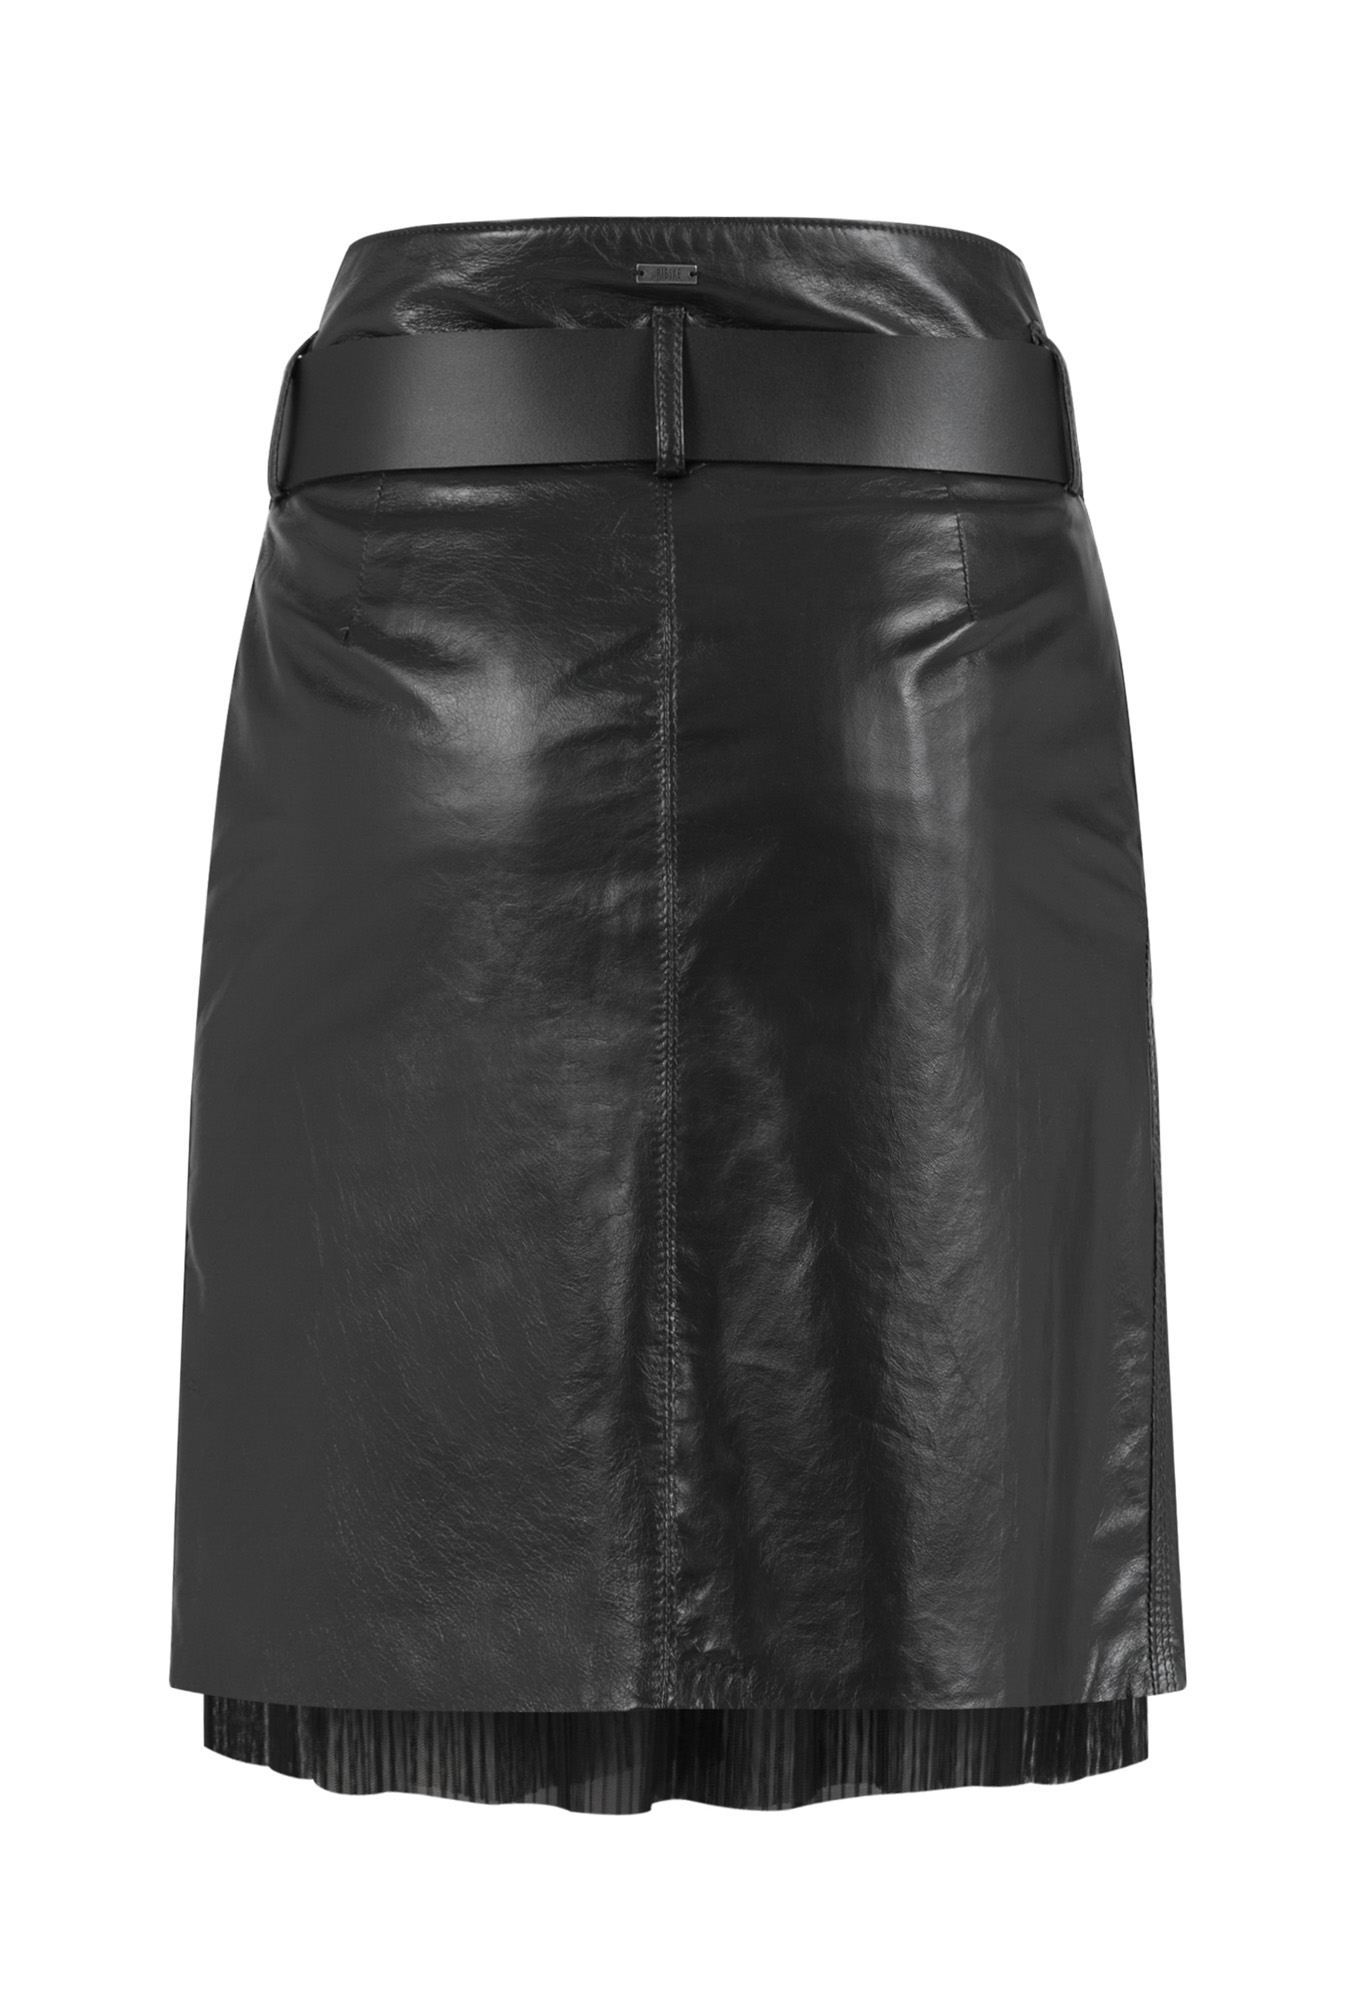 leather skirt, leather skirt with leather strap, graphite genuine leather skirt, graphite leather skirt with petticoat, Italian leather skirt, natural leather skirt,  graphite, leather skirts with petticoat, premium